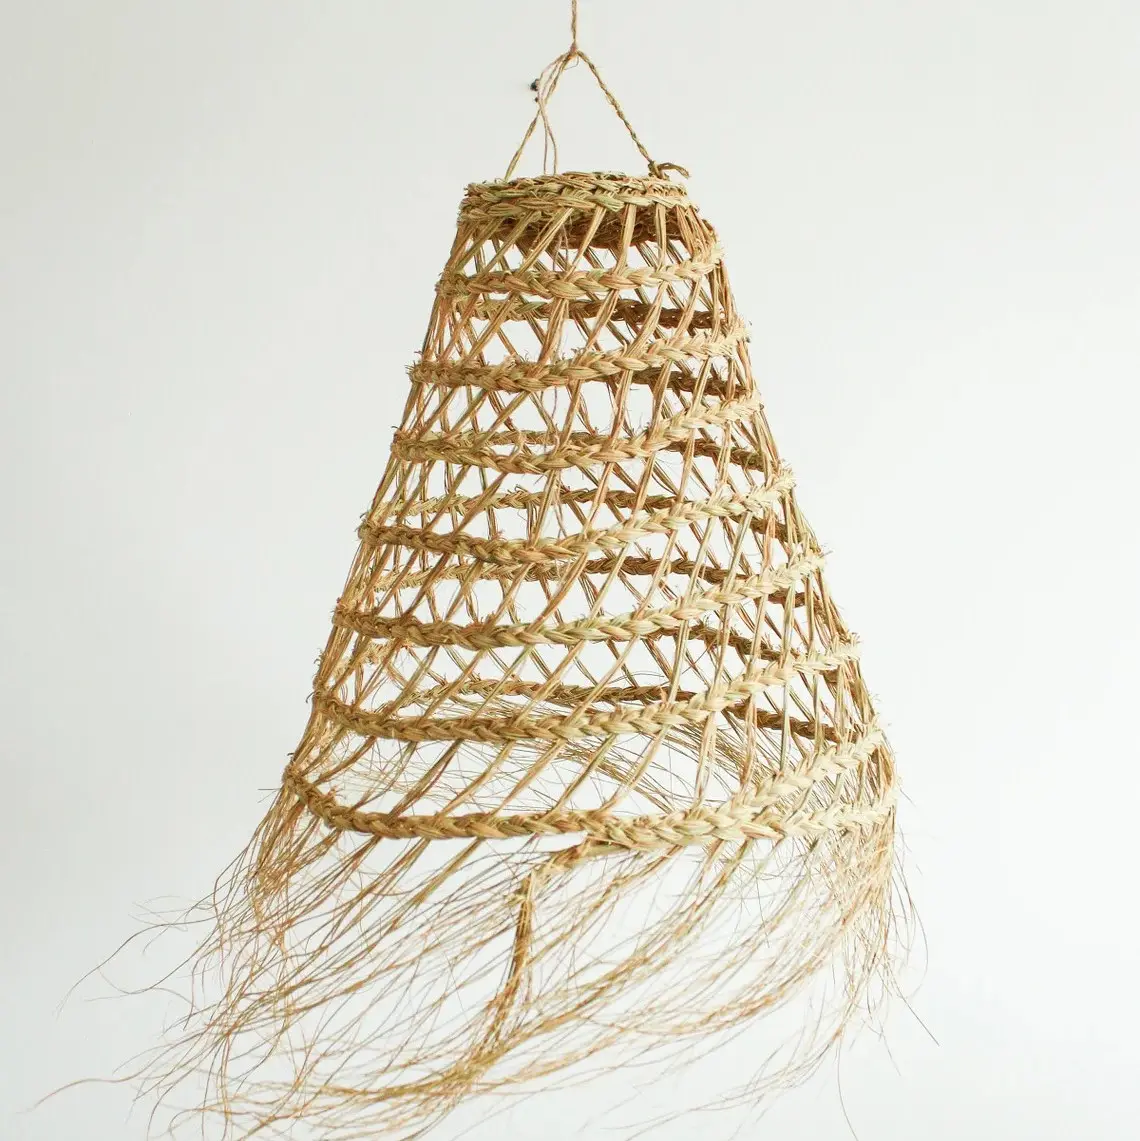 Pantalla de mimbre para lámparas colgantes, cubierta de paja con forma de sombrero de rafia natural, césped de mar, Estilo Vintage